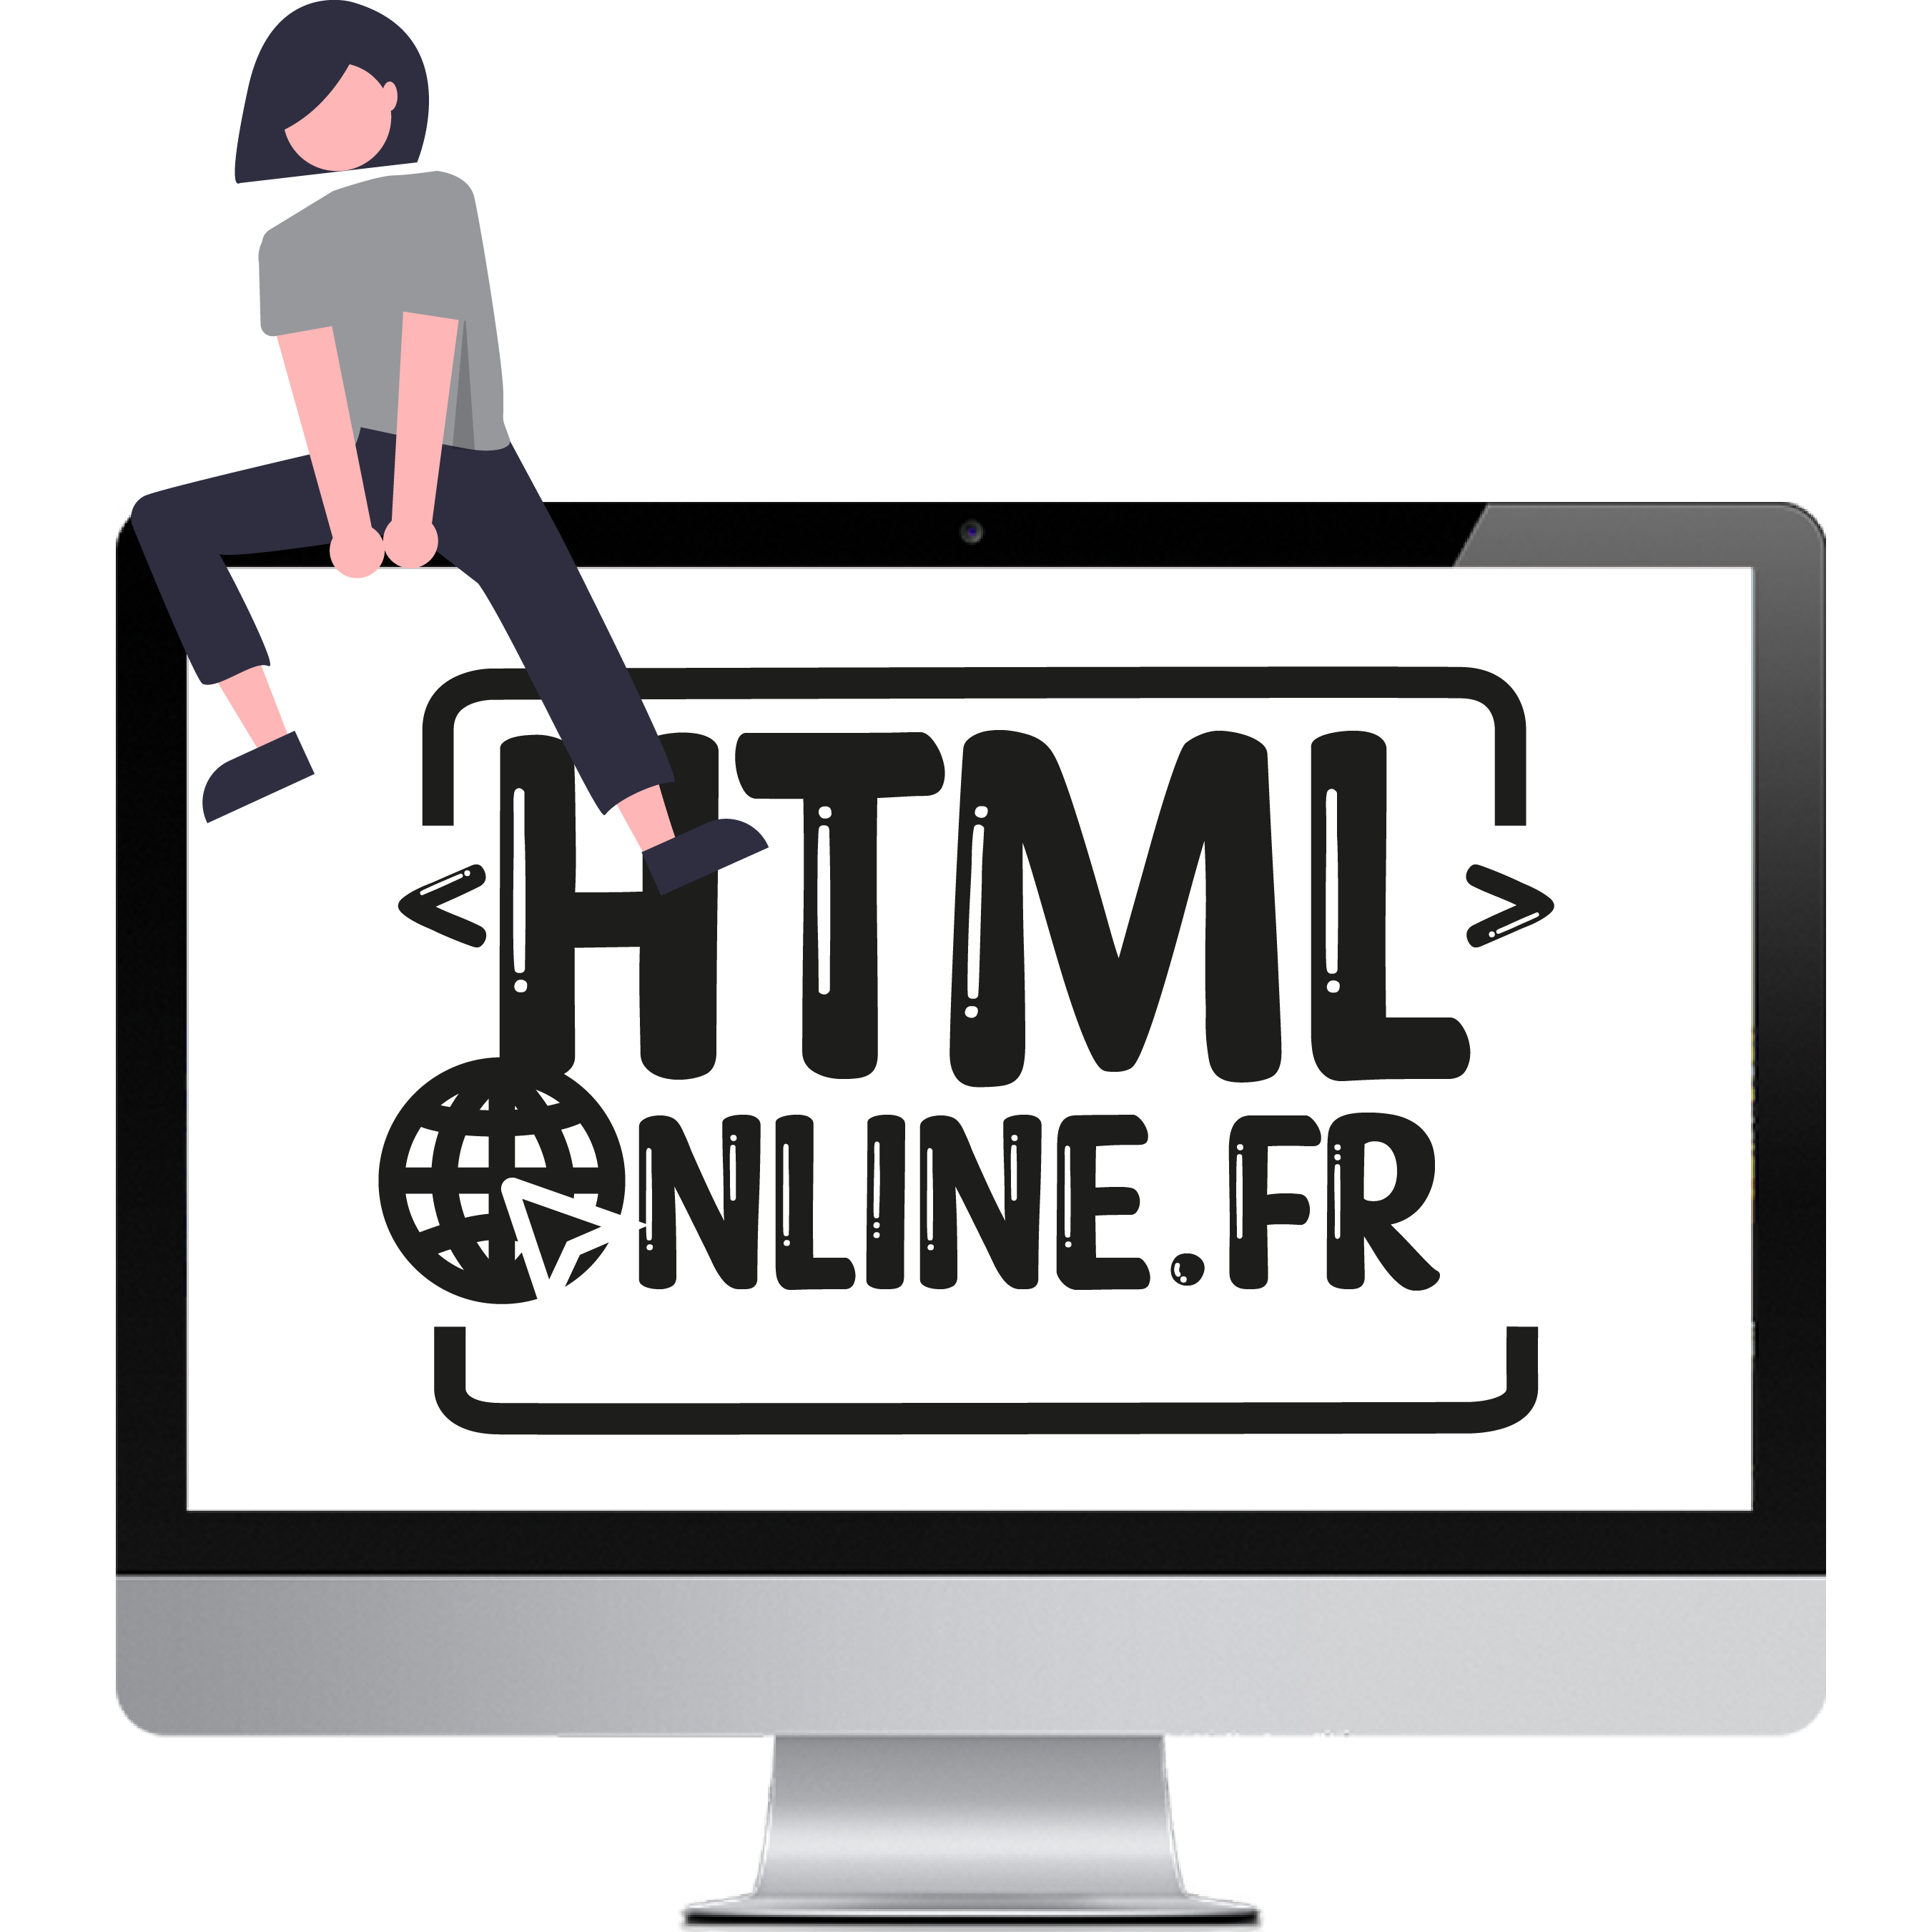 illustration d'une femme assis sur le bord, en haut a gauche d'un écran d'ordinateur qui affiche le logo HTML-Online.fr